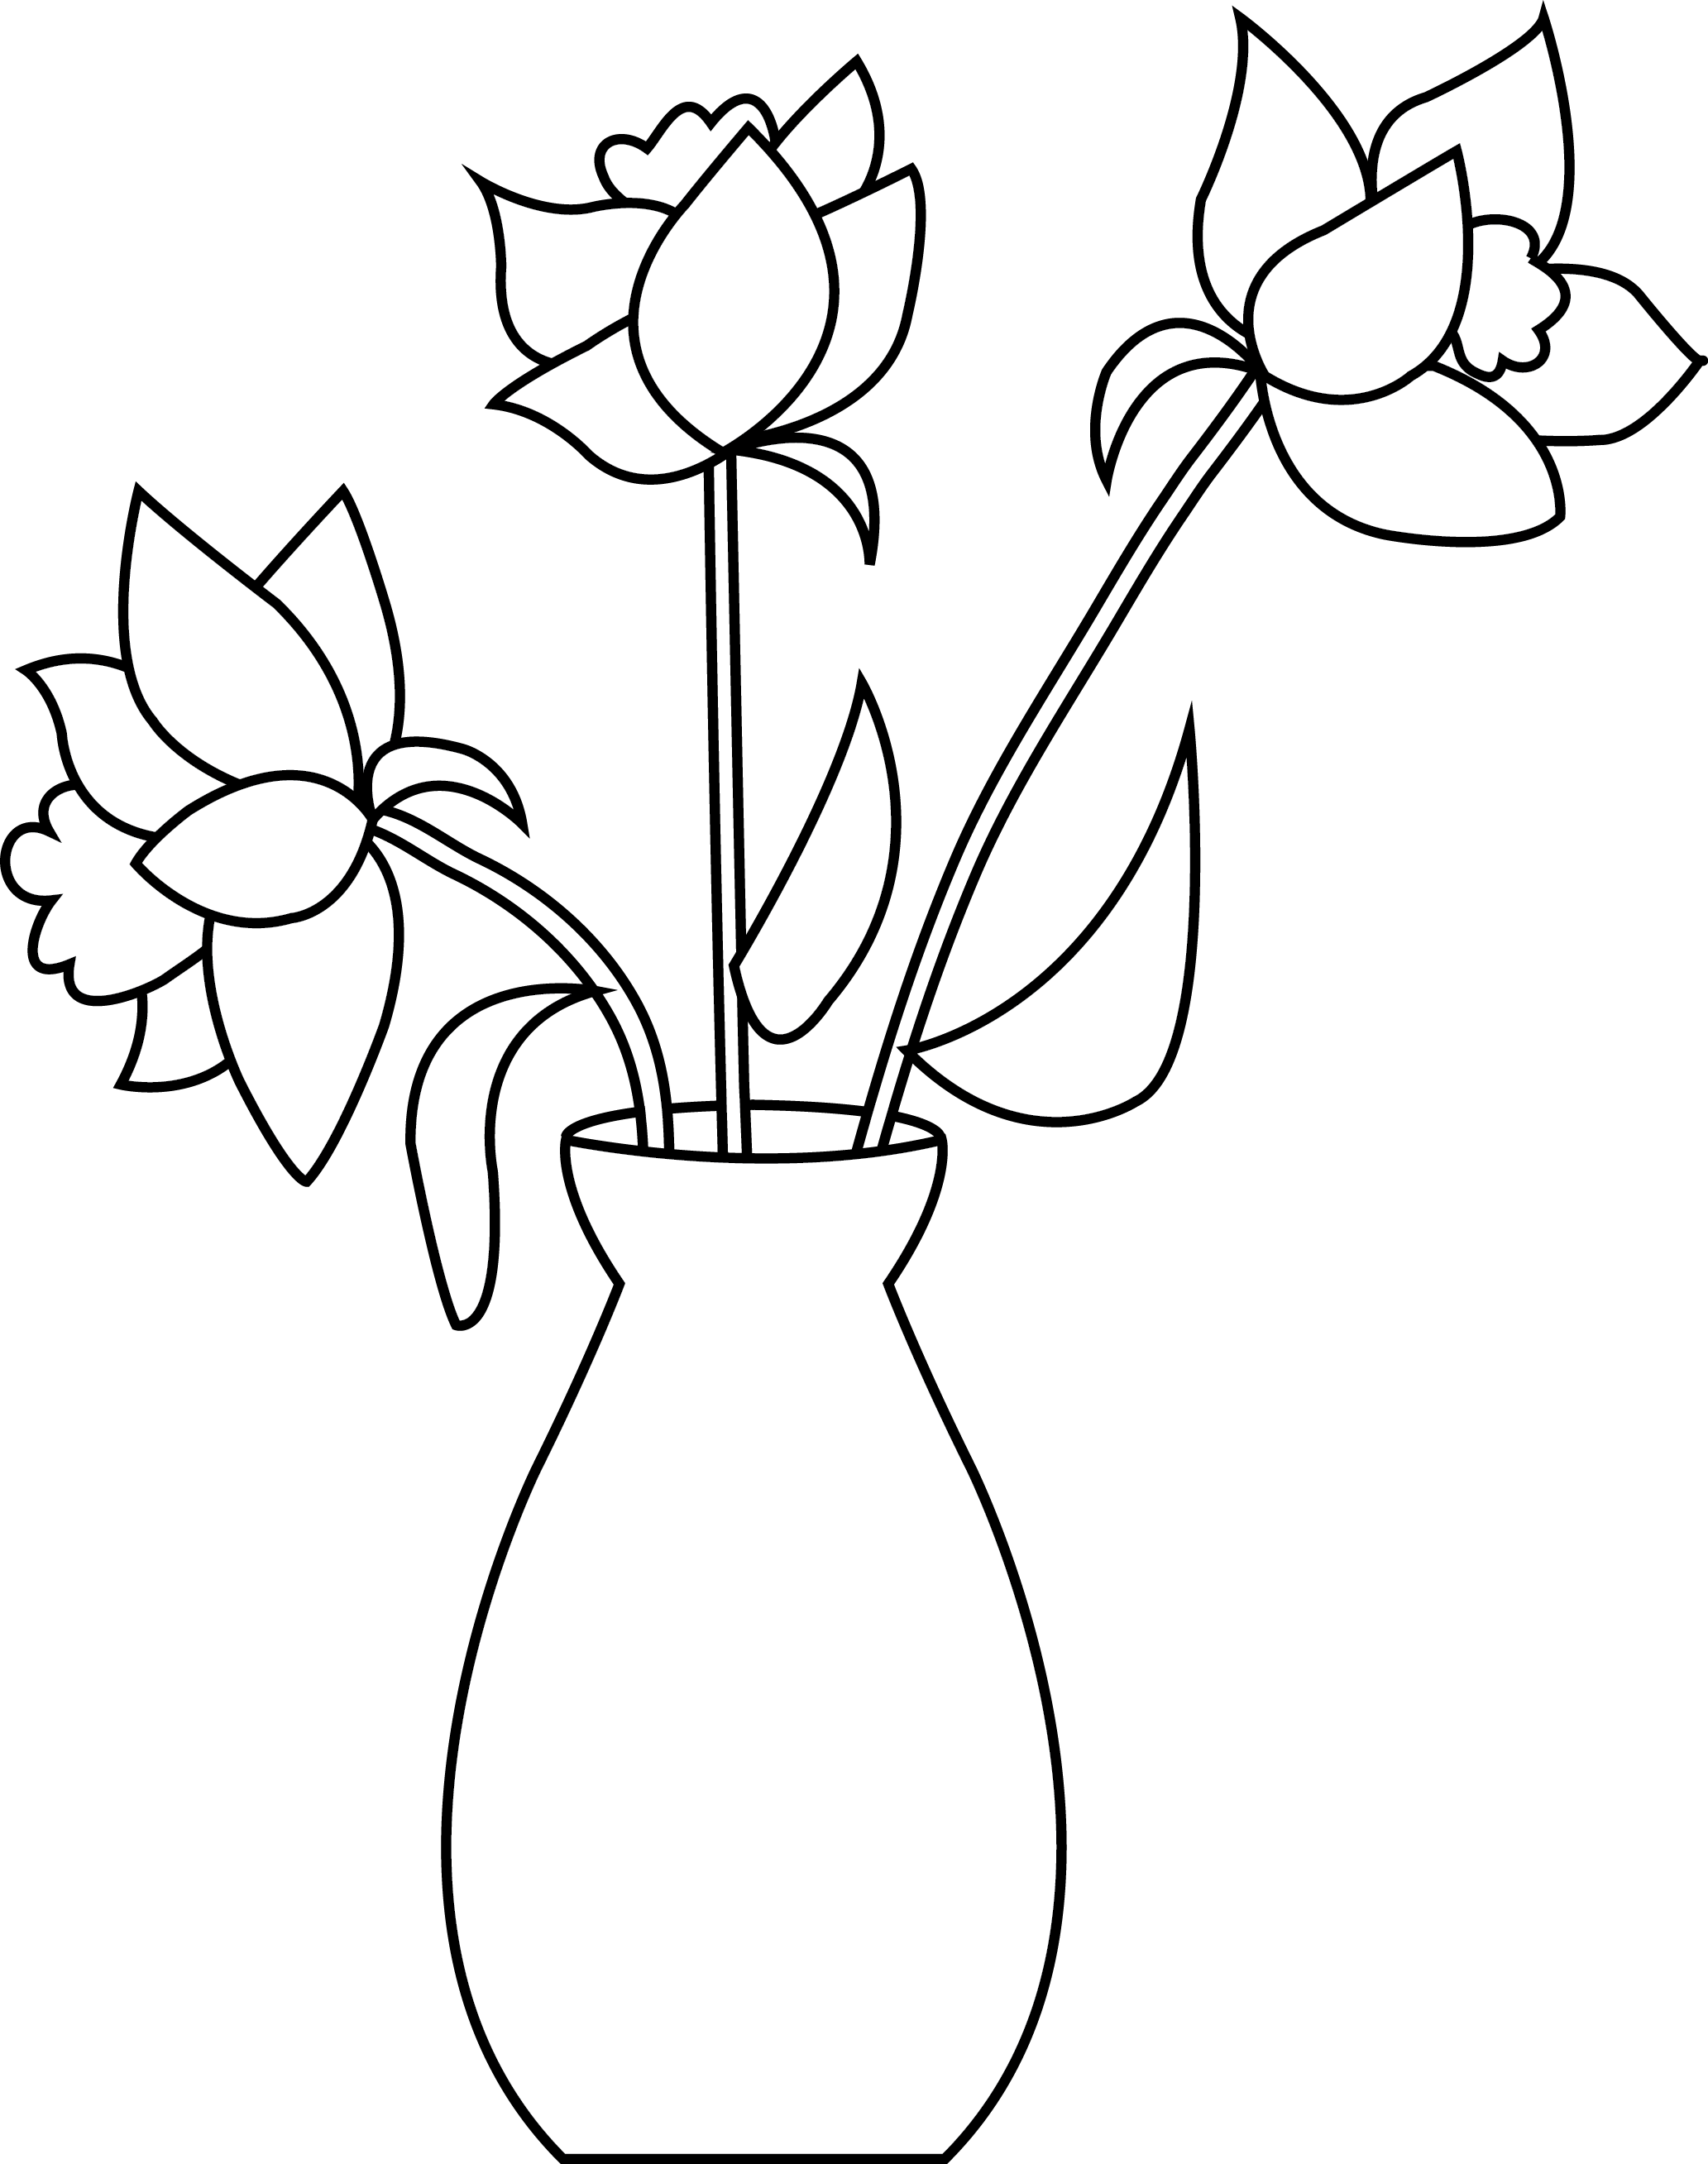 Основные шаги при рисовании цветов в вазе легко